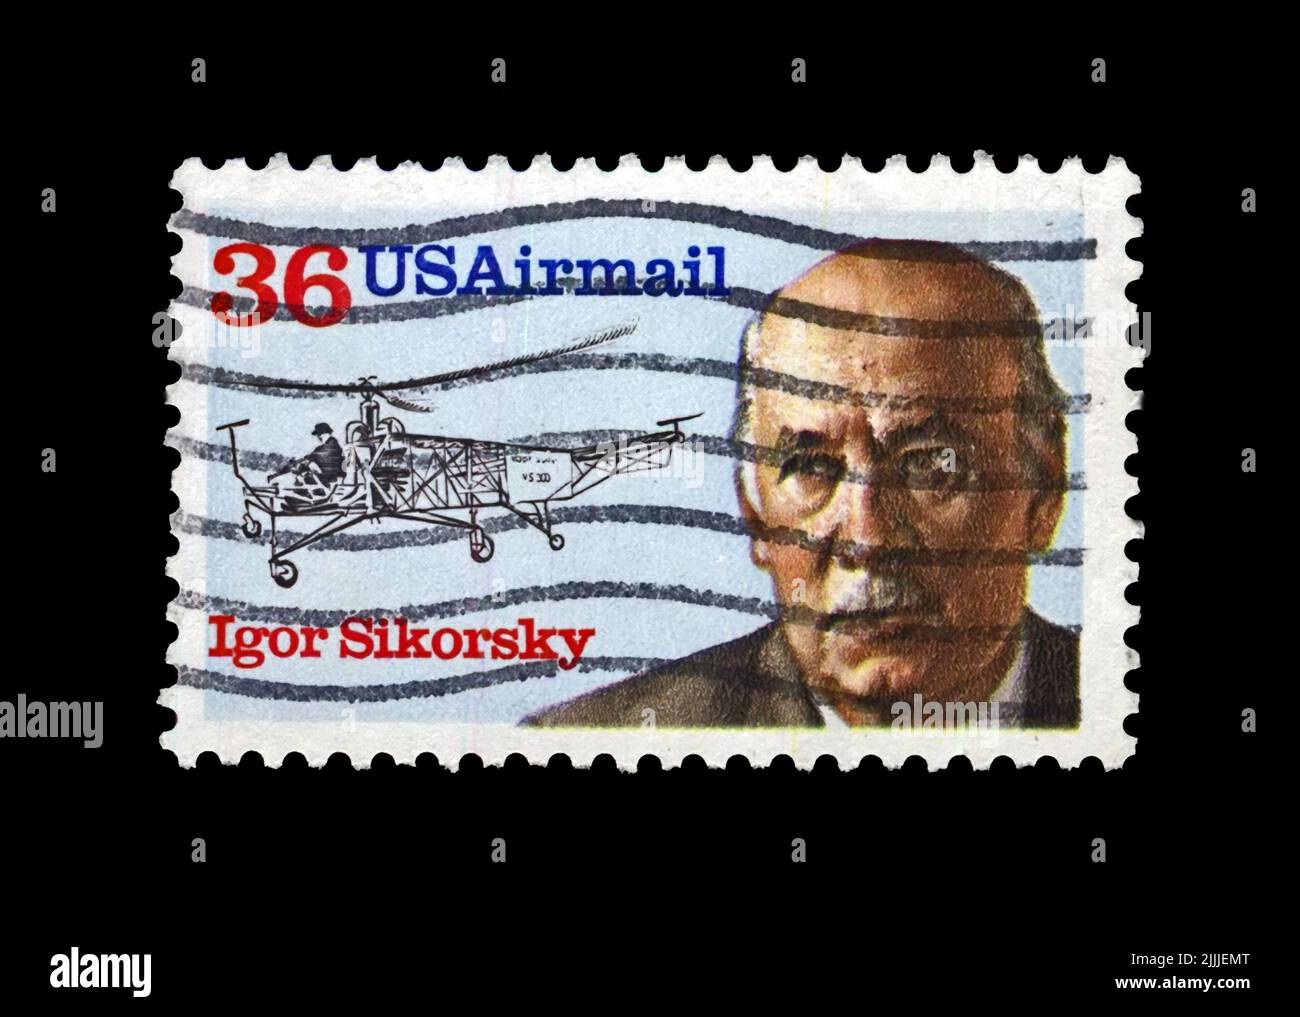 Le timbre postal imprimé aux États-Unis montre l'aviateur, le créateur de l'hélicoptère Igor Sikorsky, vers 1988. Timbre postal vintage isolé sur fond noir Banque D'Images